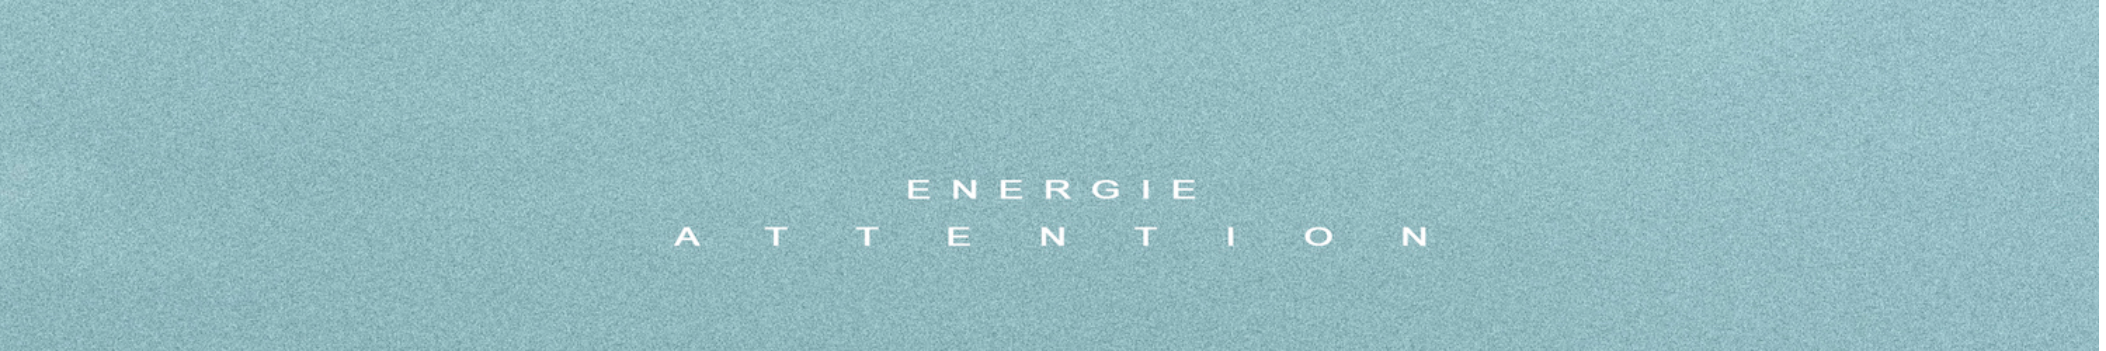 #Energie